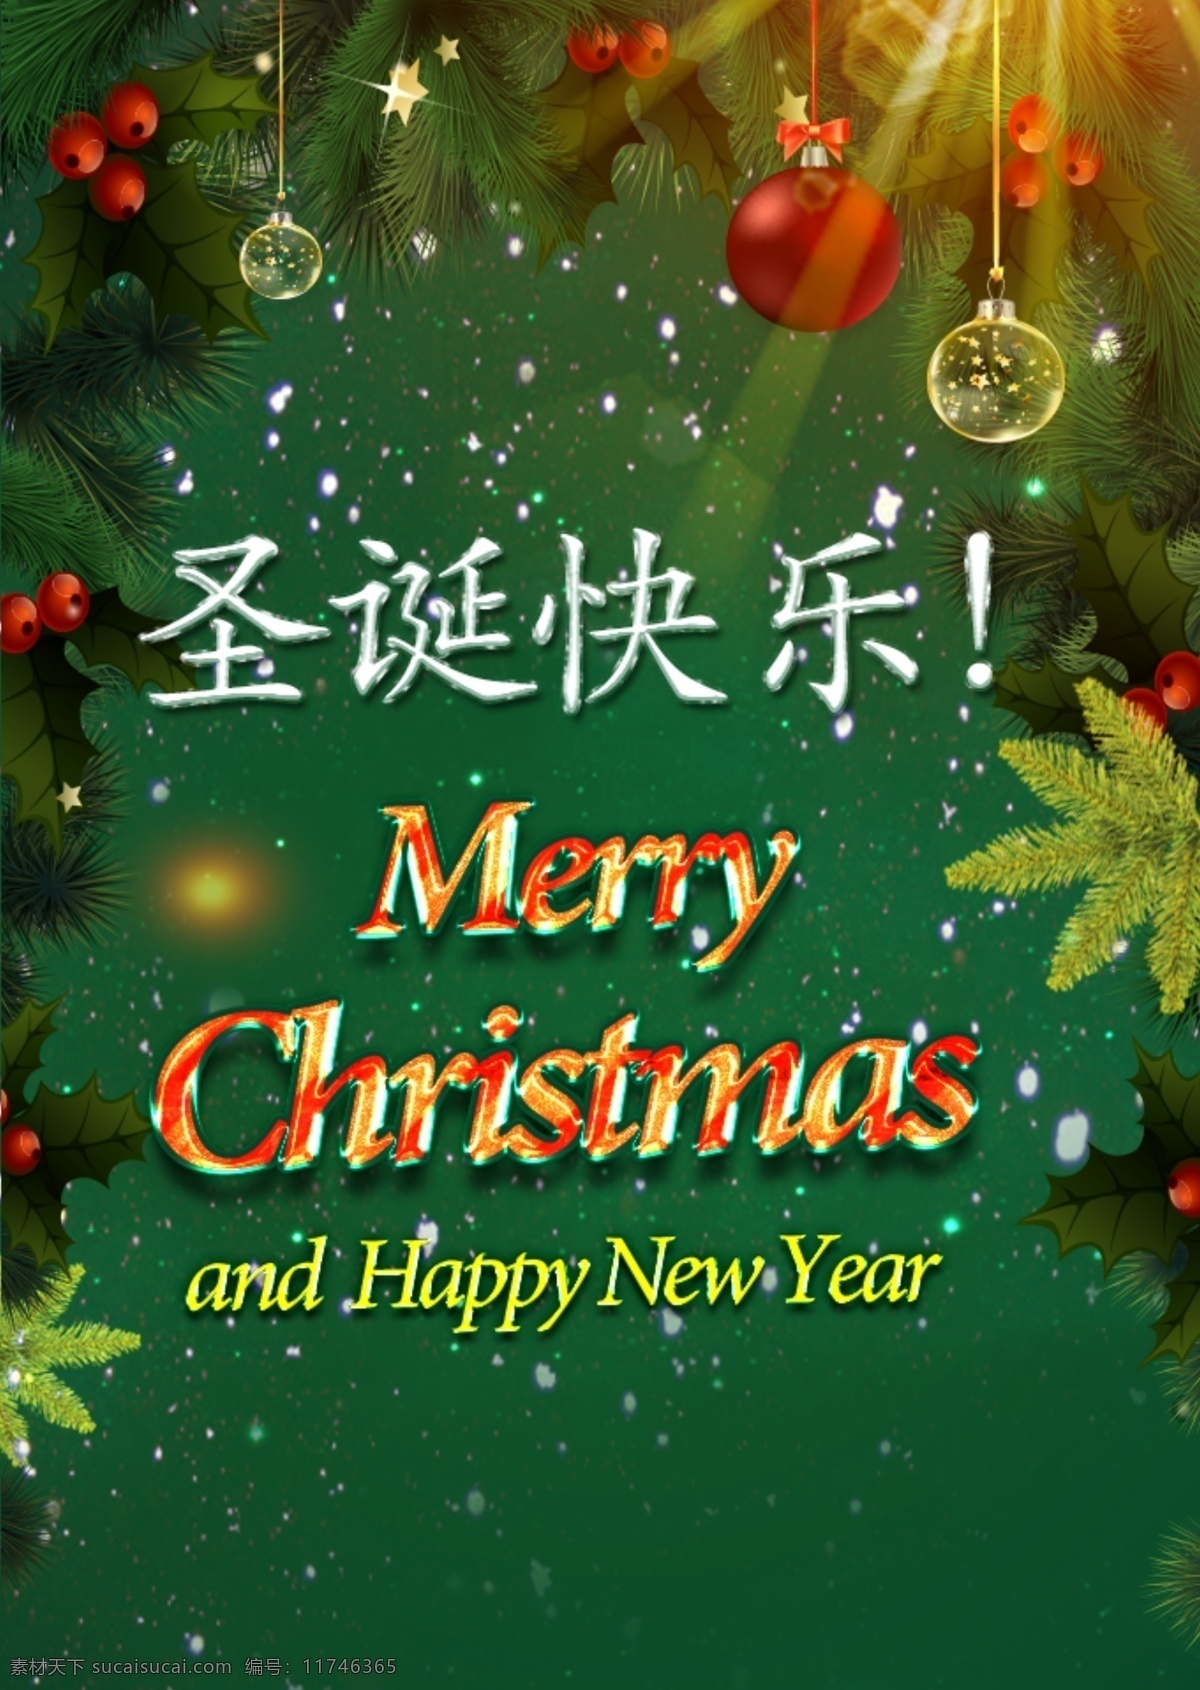 圣诞快乐 圣诞节 新年 海报 圣诞元素 圣诞装饰 字体设计 光线 平面设计 节日 跨年 绿色背景 装饰球 针叶